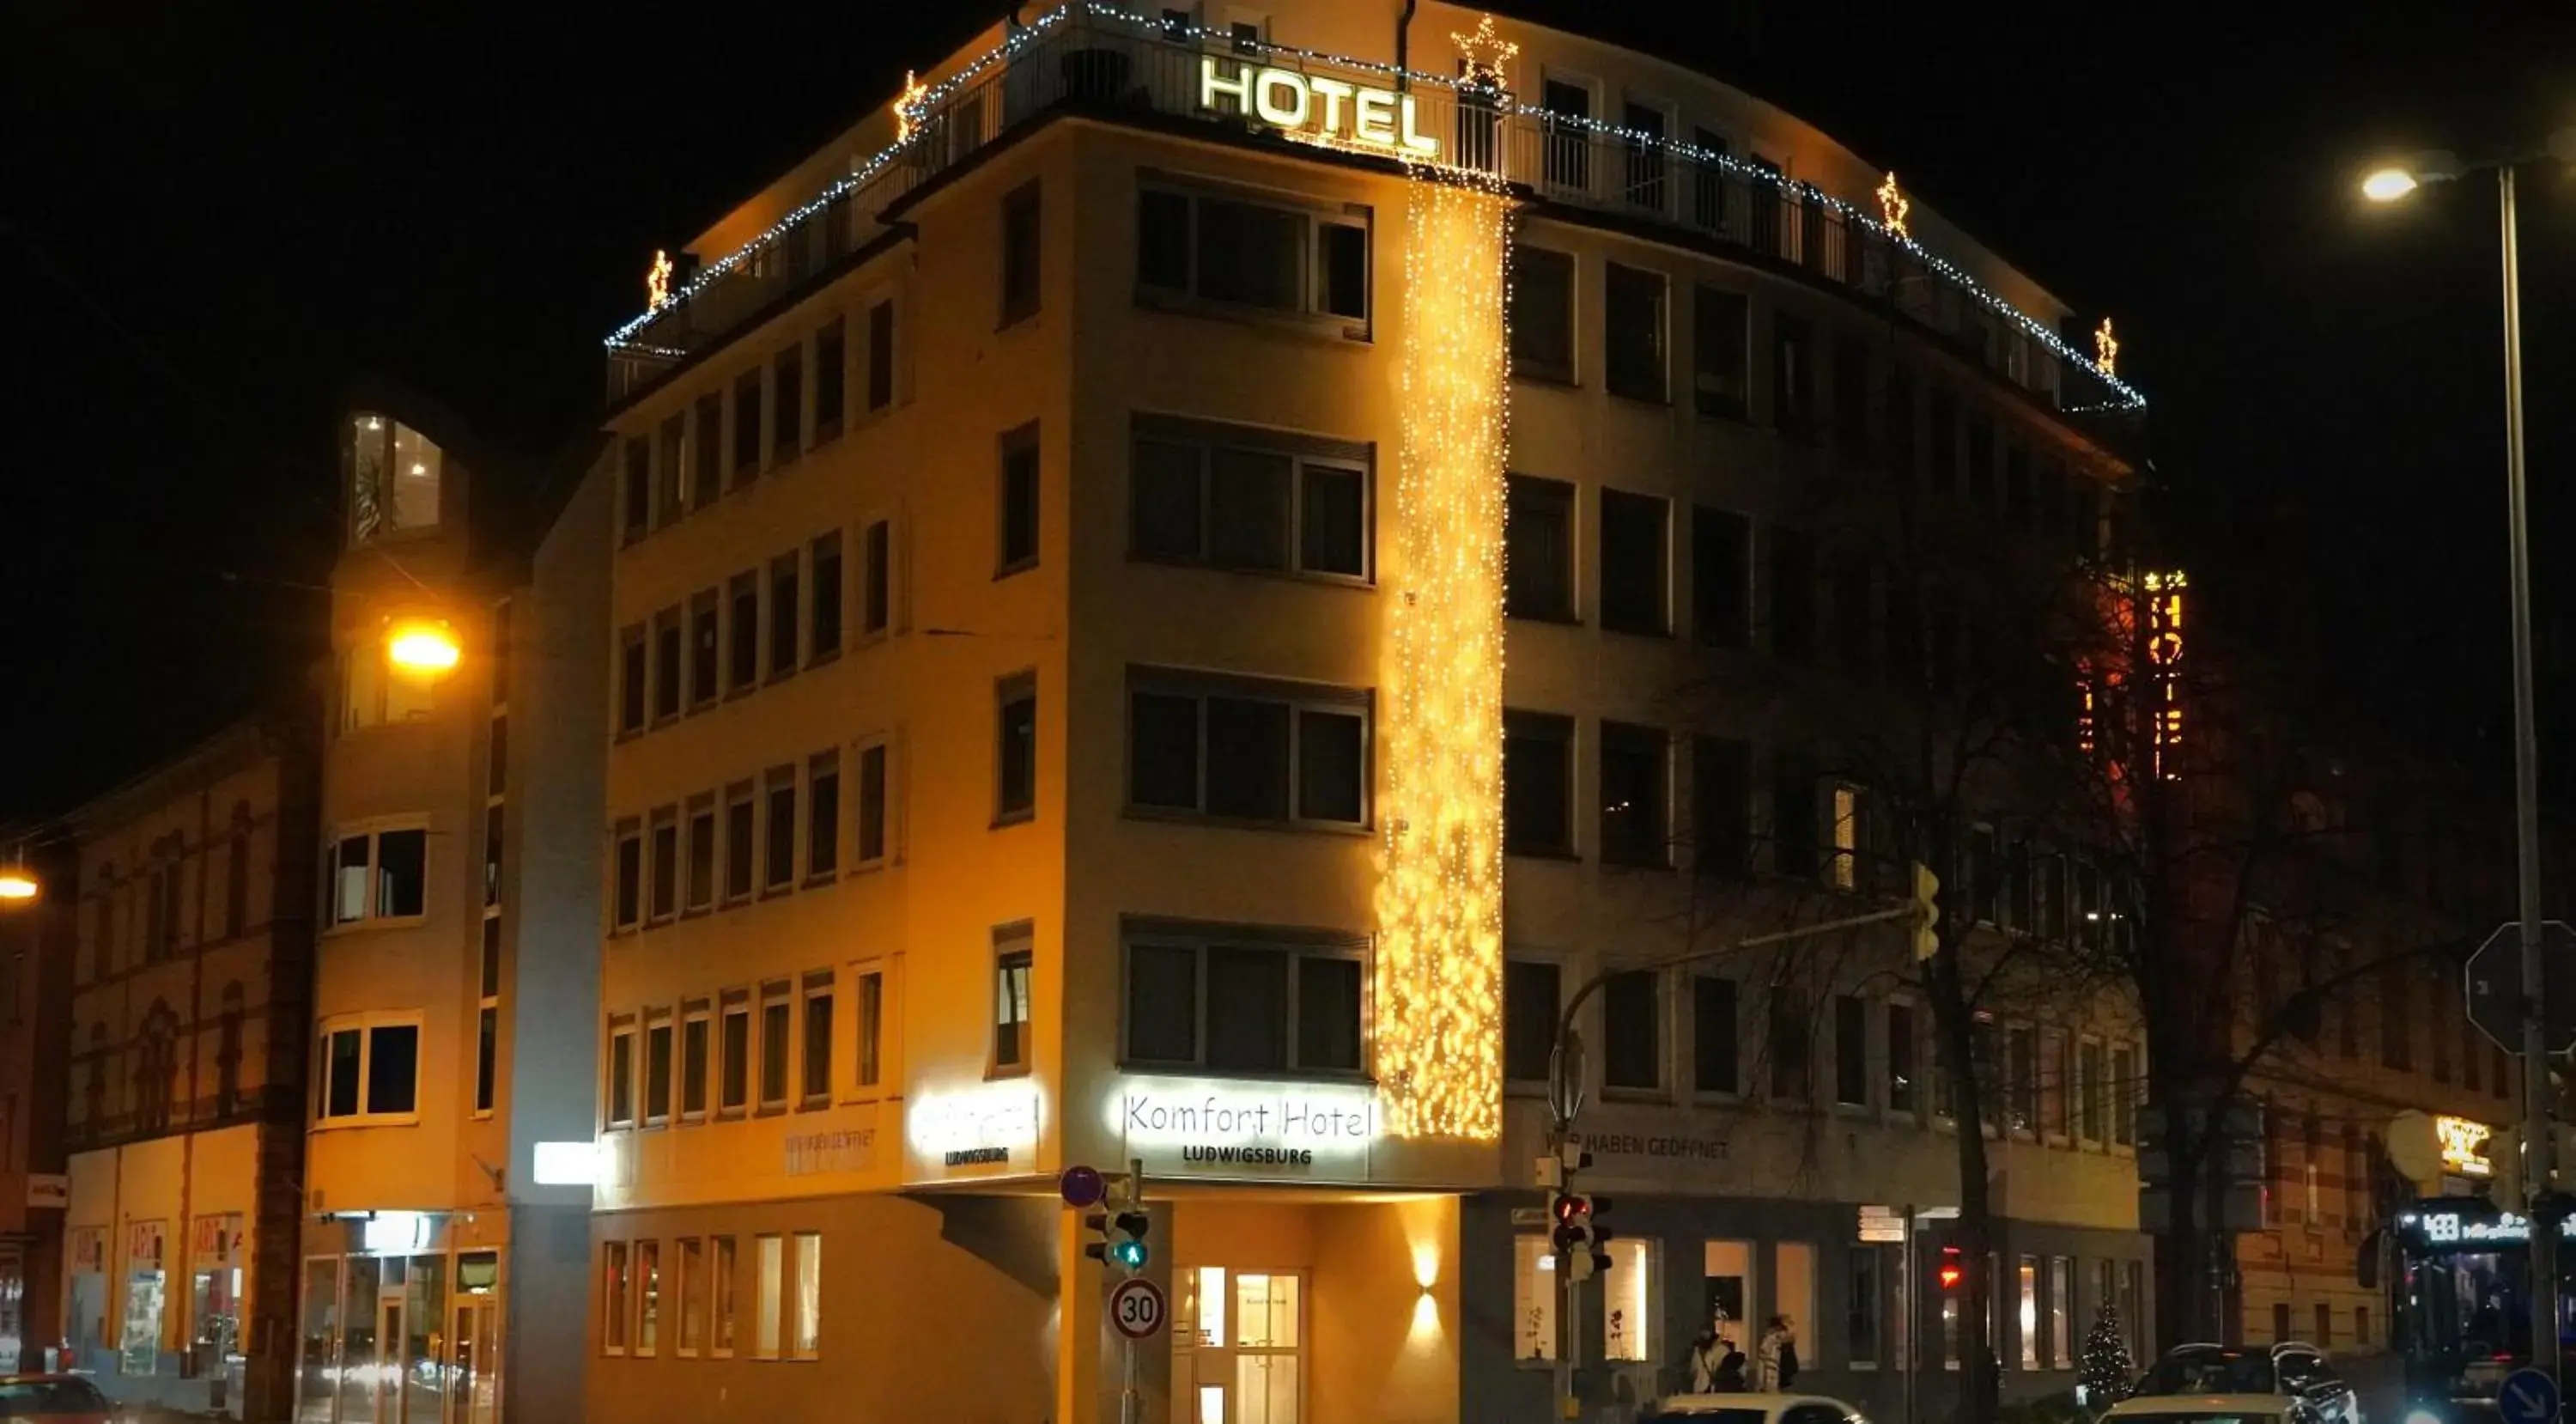 Property Building in Komfort Hotel Ludwigsburg